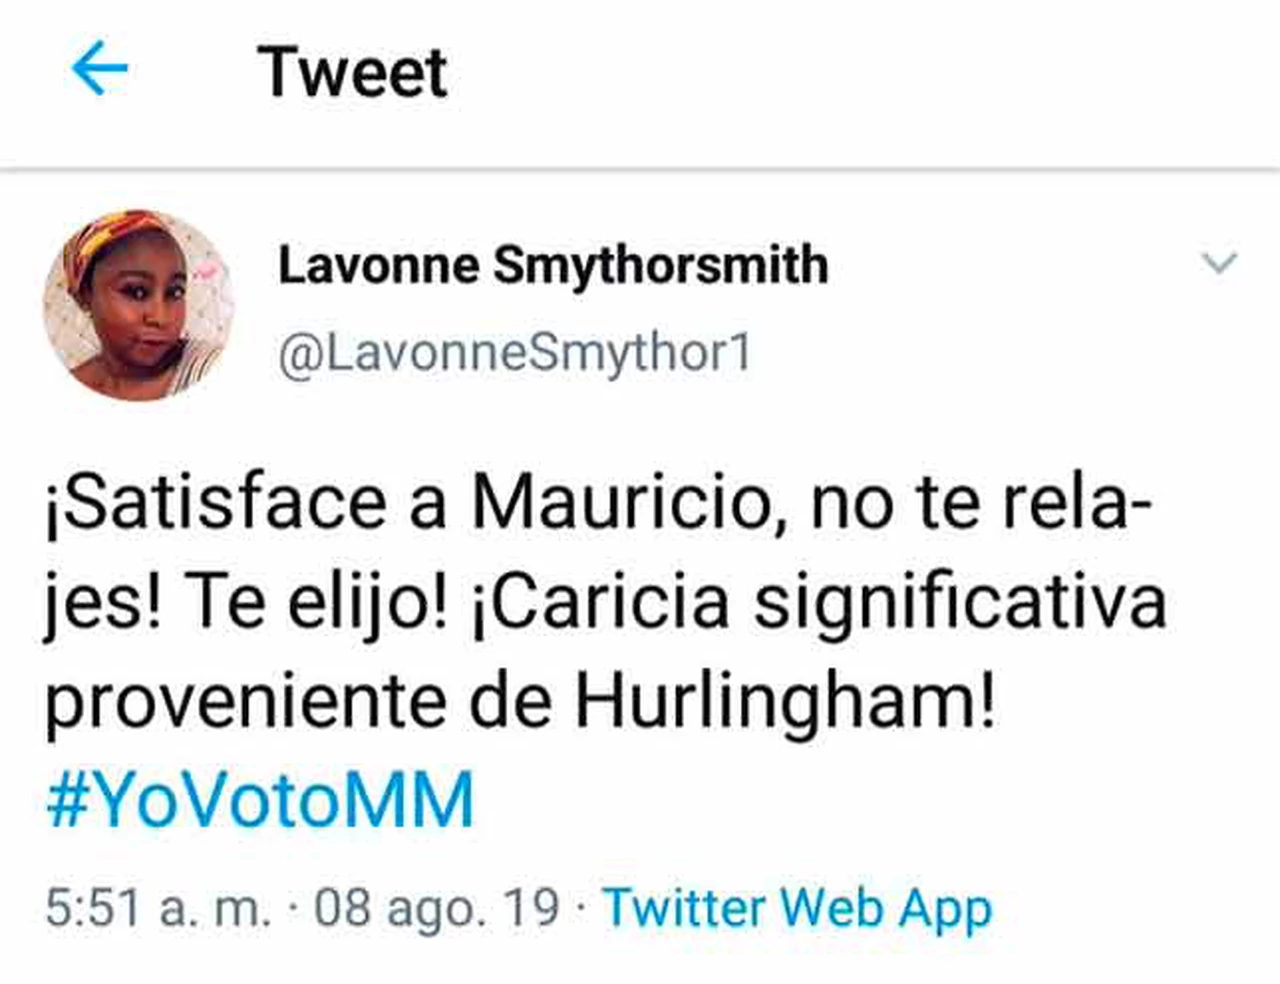 Un error dejó al descubierto la campaña viral de Macri en Twitter: "Satisface a Mauricio"